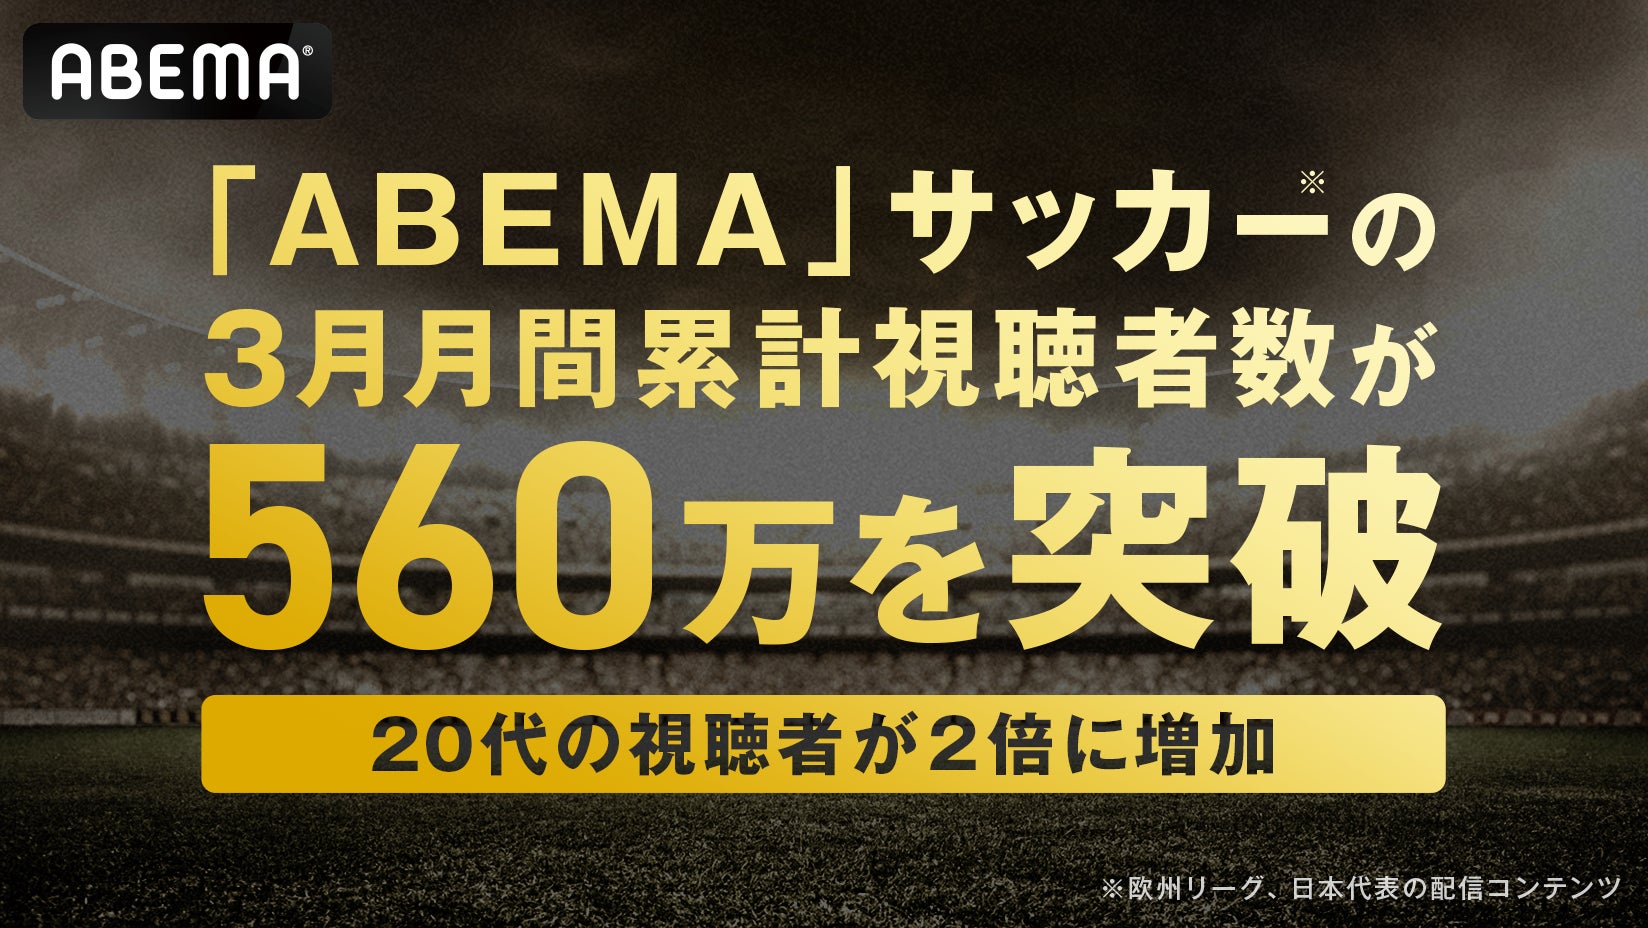 甲子園歴史館 阪神タイガース企画展
「阪神甲子園球場100年とタイガースの歴史」
を4月9日（火）から開催します